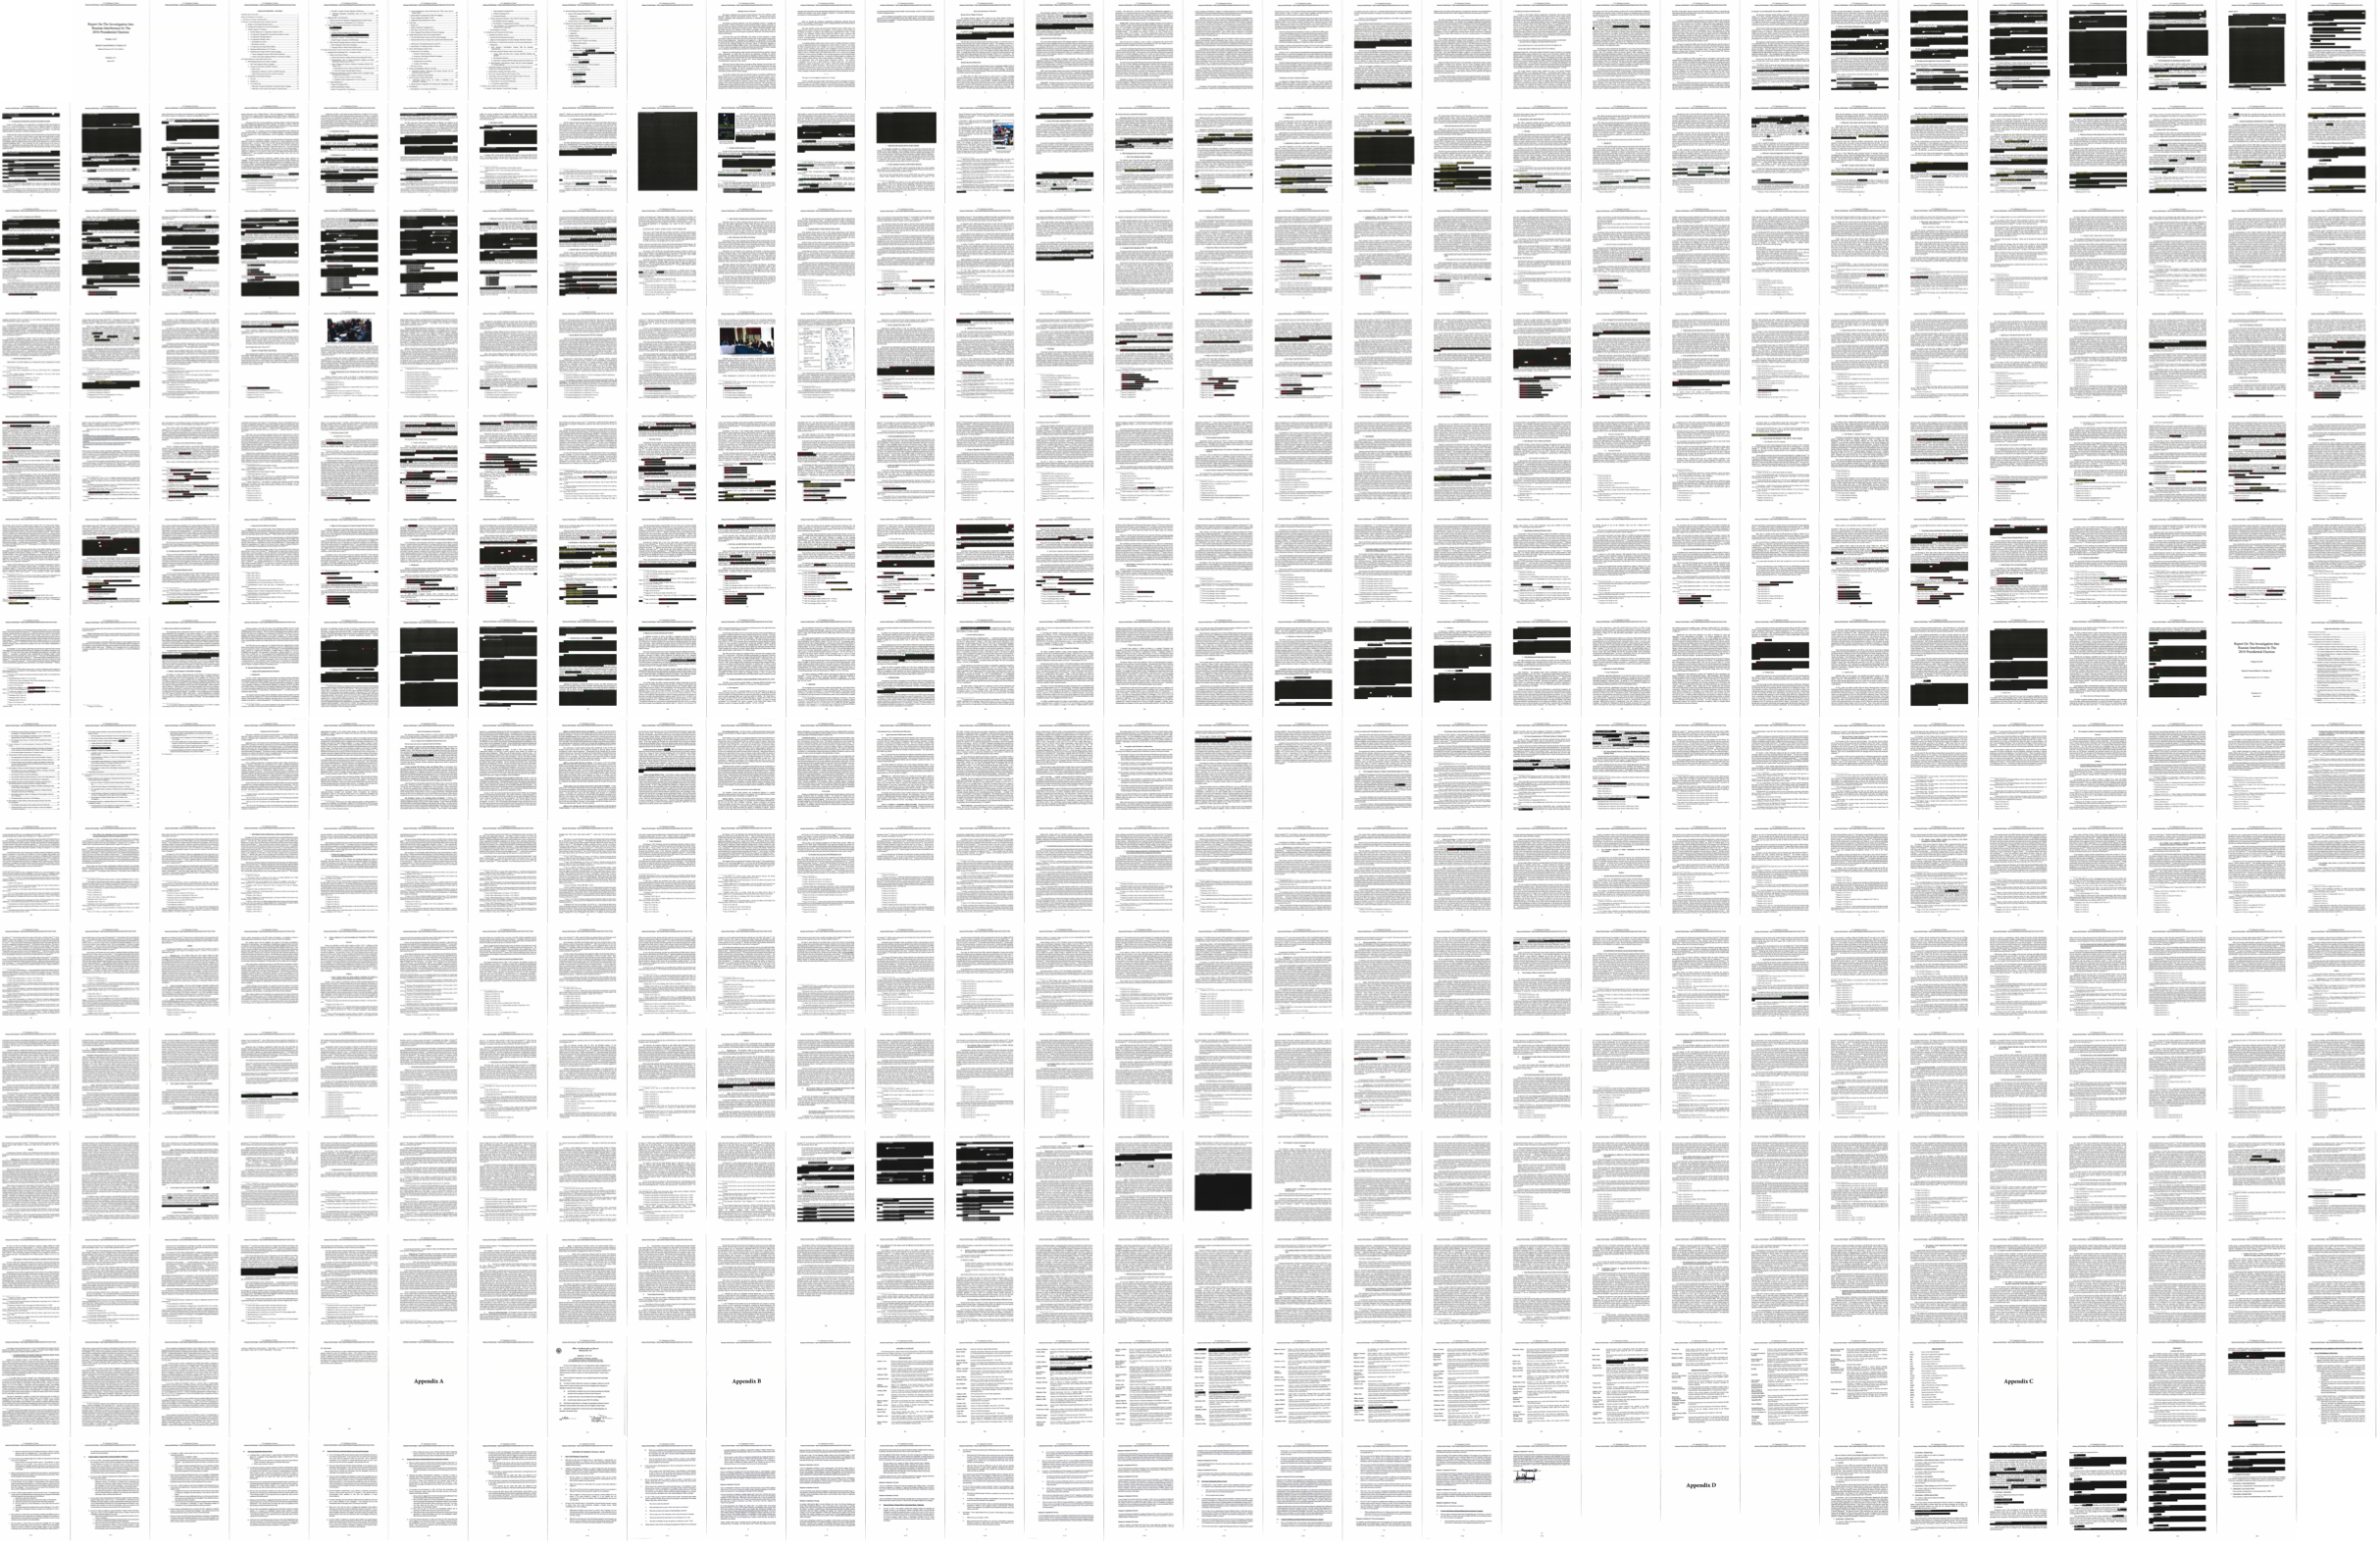 redacted pdf size